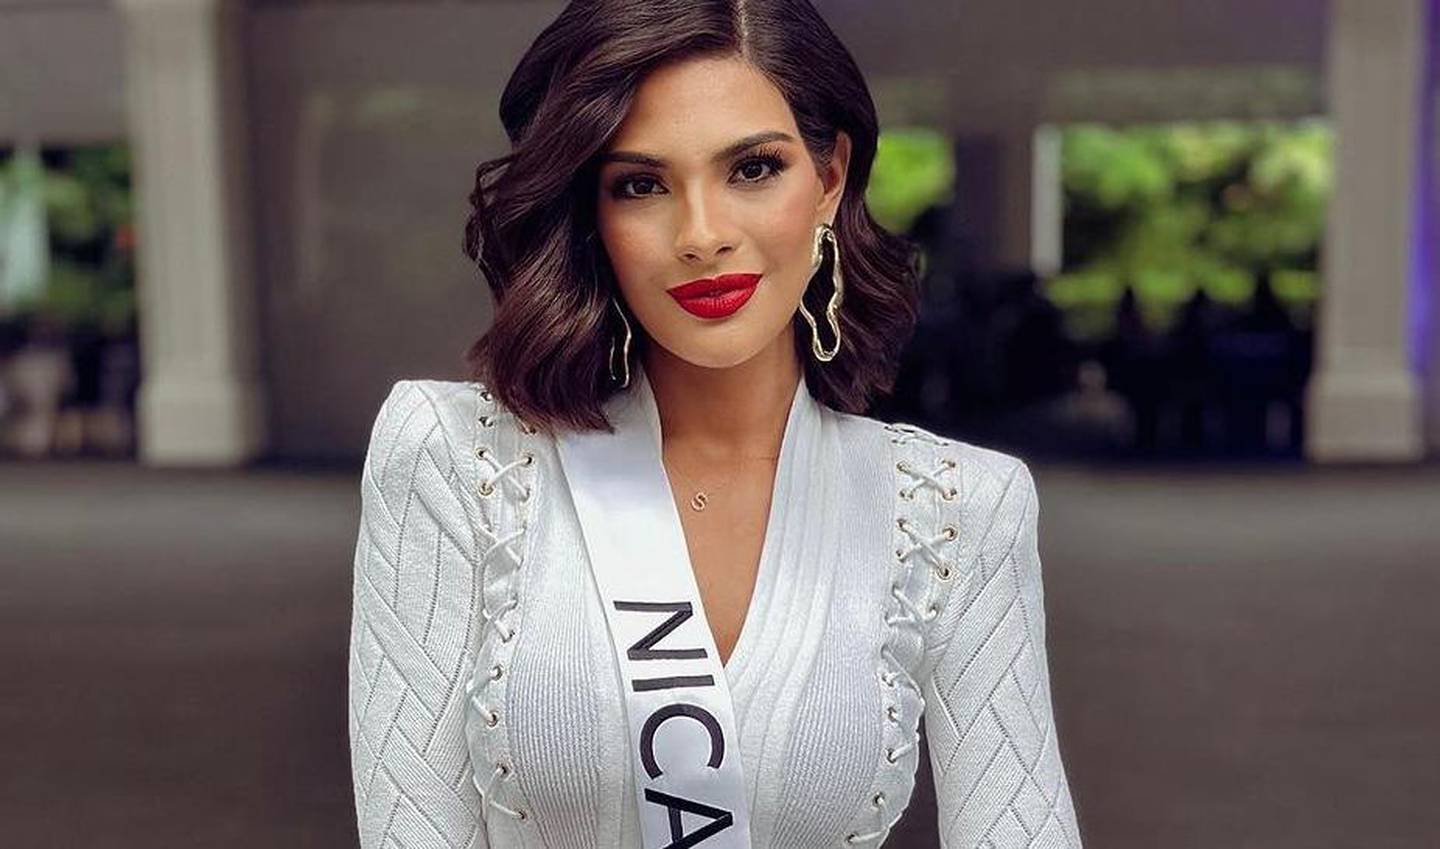 Sheynnis Palacios, es la primera Miss Universo centroamericana. Ella también levantó la voz en las protestas del 2018 en Nicaragua.